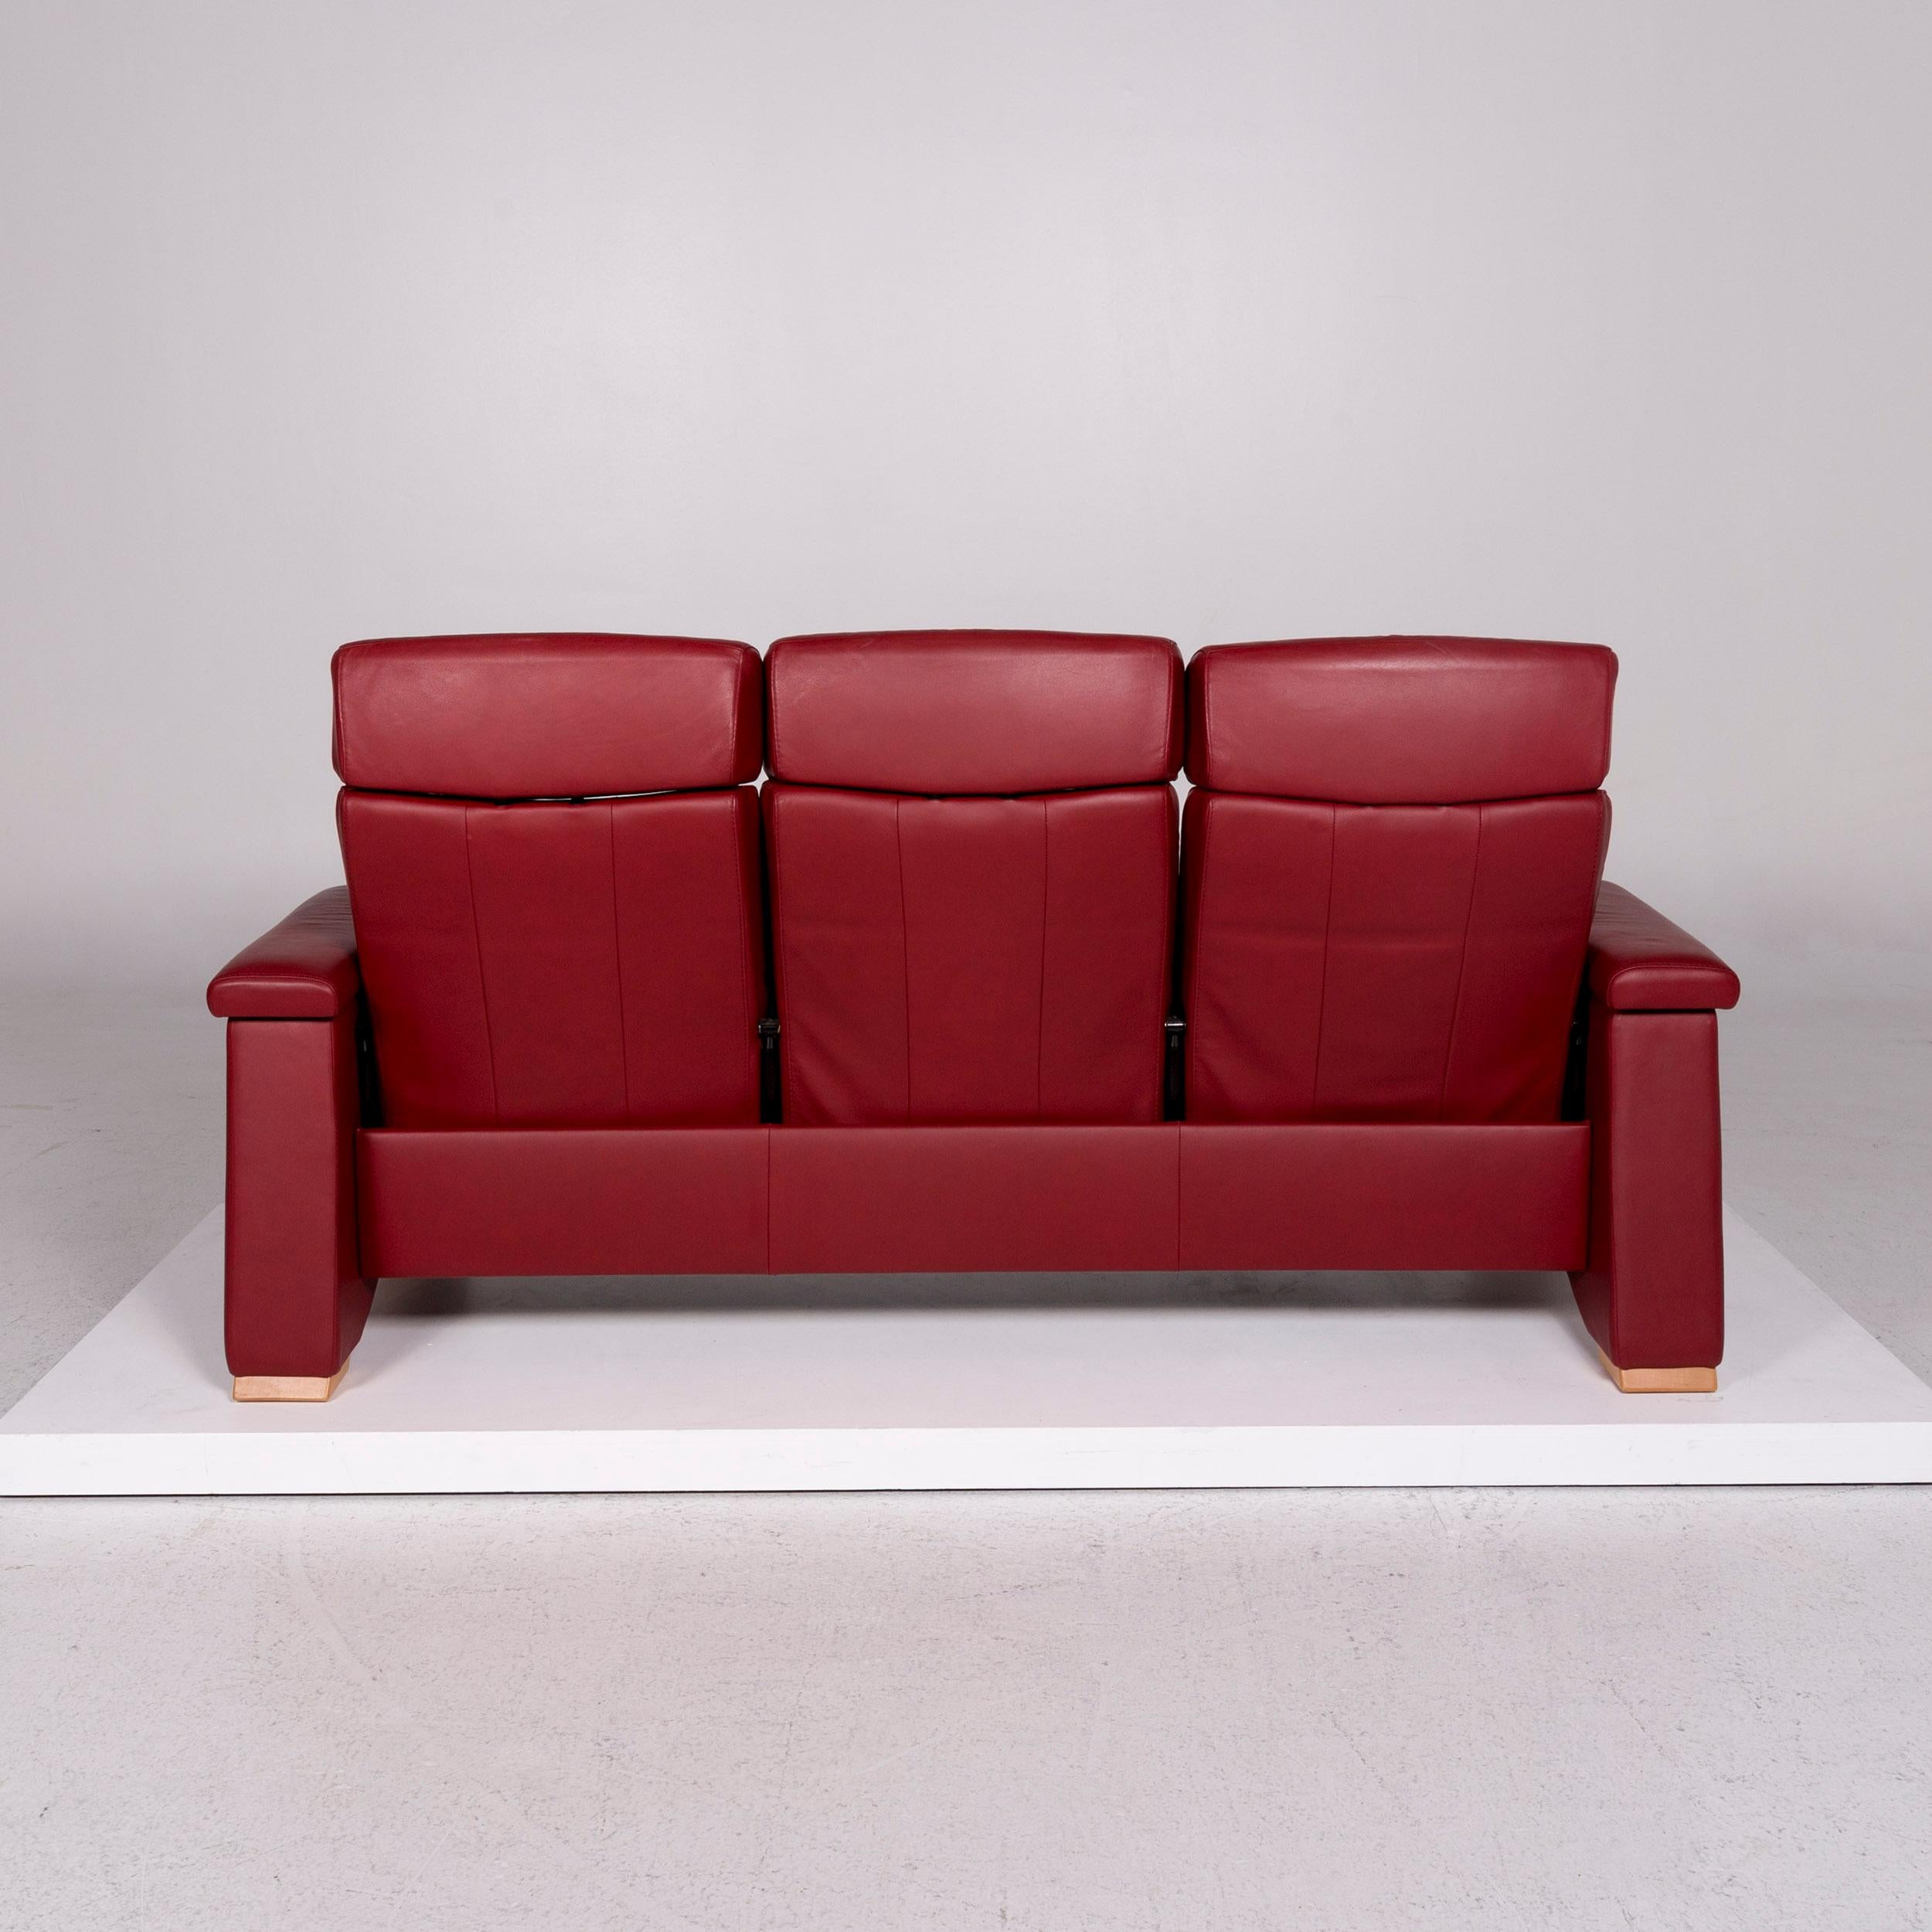 Stressless Pegasus Leather Sofa Set 1 Two-Seat 2 Armchair 1 Stool 2